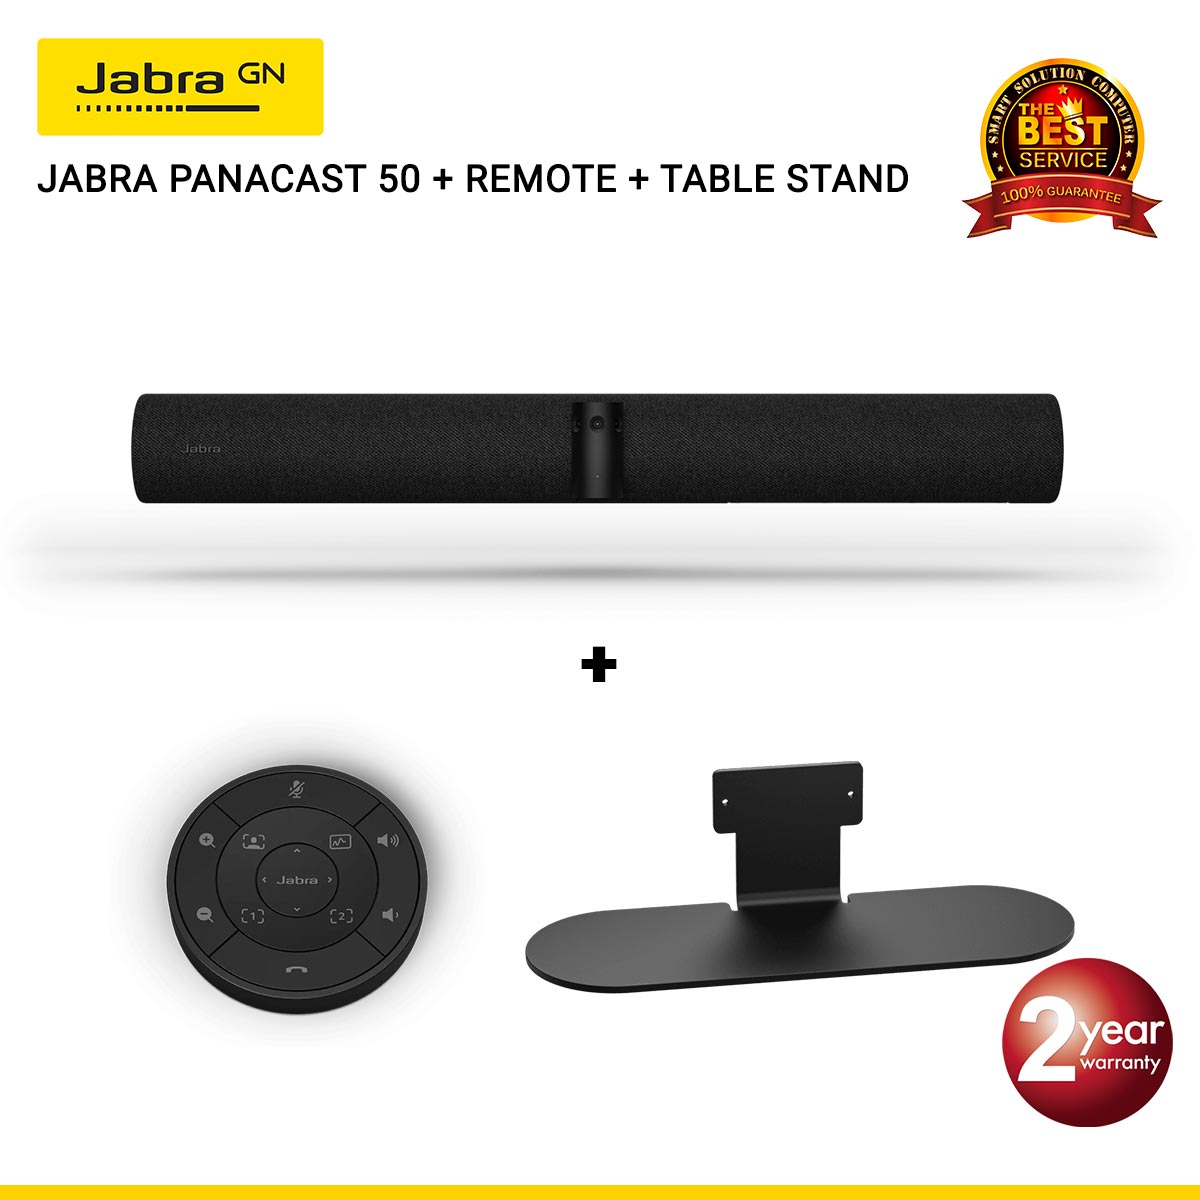 Jabra Panacast 50 180° Panoramic 4K วิดีโอคอนเฟอร์เรนซ์บาร์ สำหรับประชุมขนาดเล็กถึงขนาดกลาง (Black)